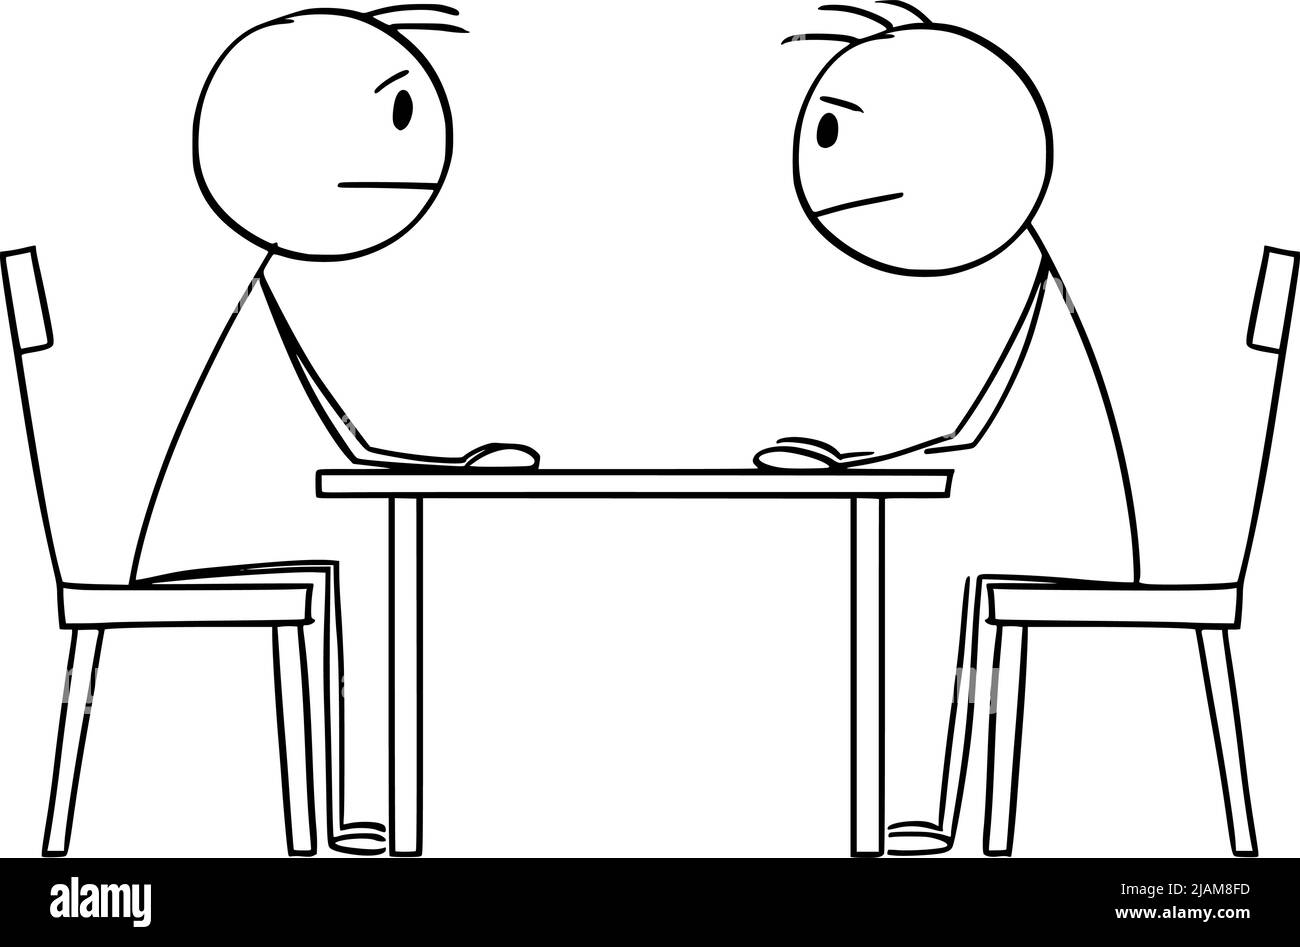 Deux personnes, hommes politiques ou hommes d'affaires négociant et assis à la table, Illustration de la figure de bâton de dessin vectoriel Illustration de Vecteur